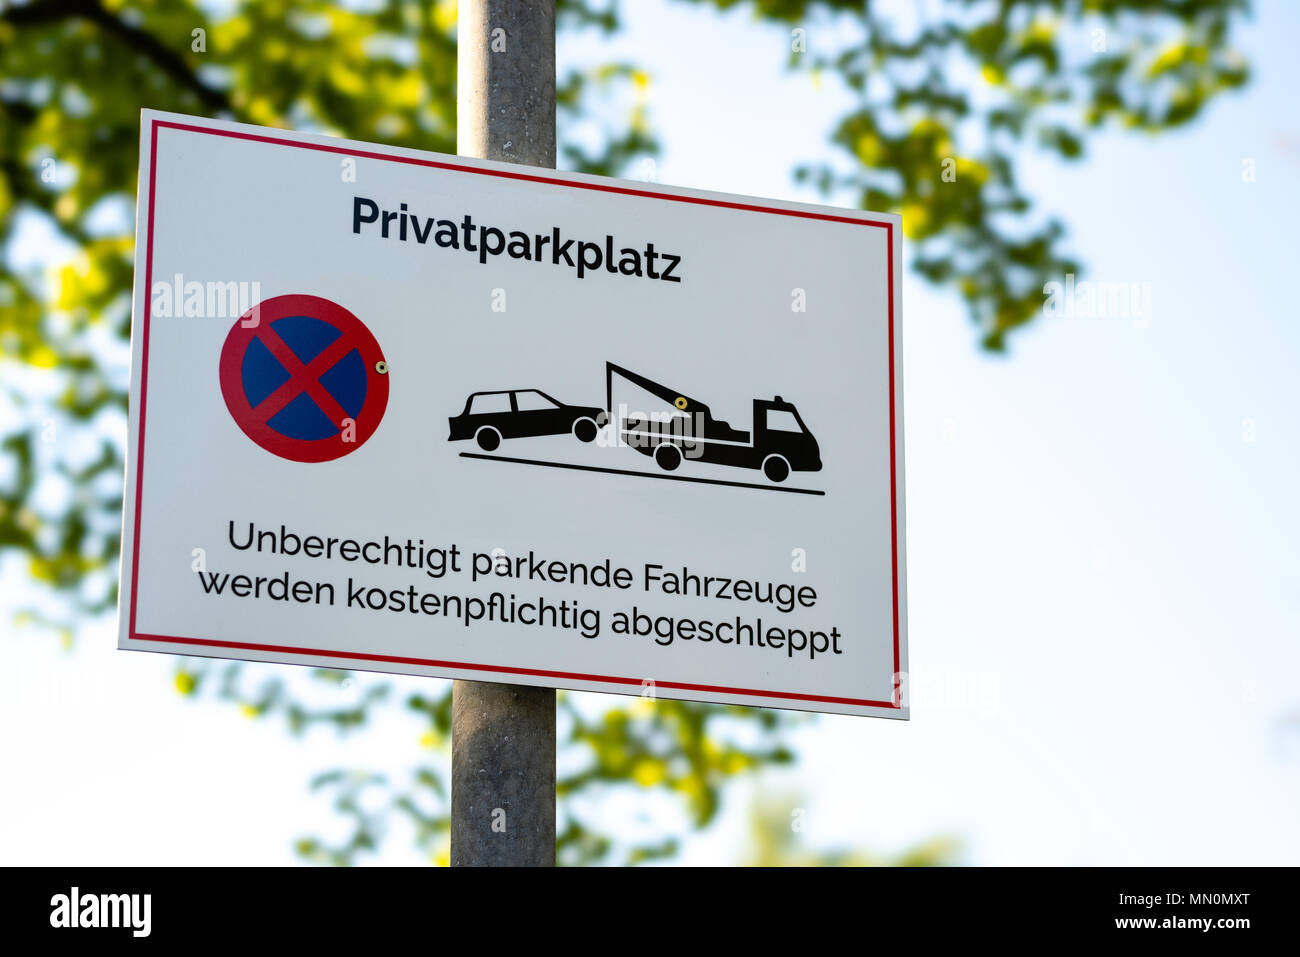 Private parking - Privatparkplatz - Parken verboten - abschleppen Stock Photo